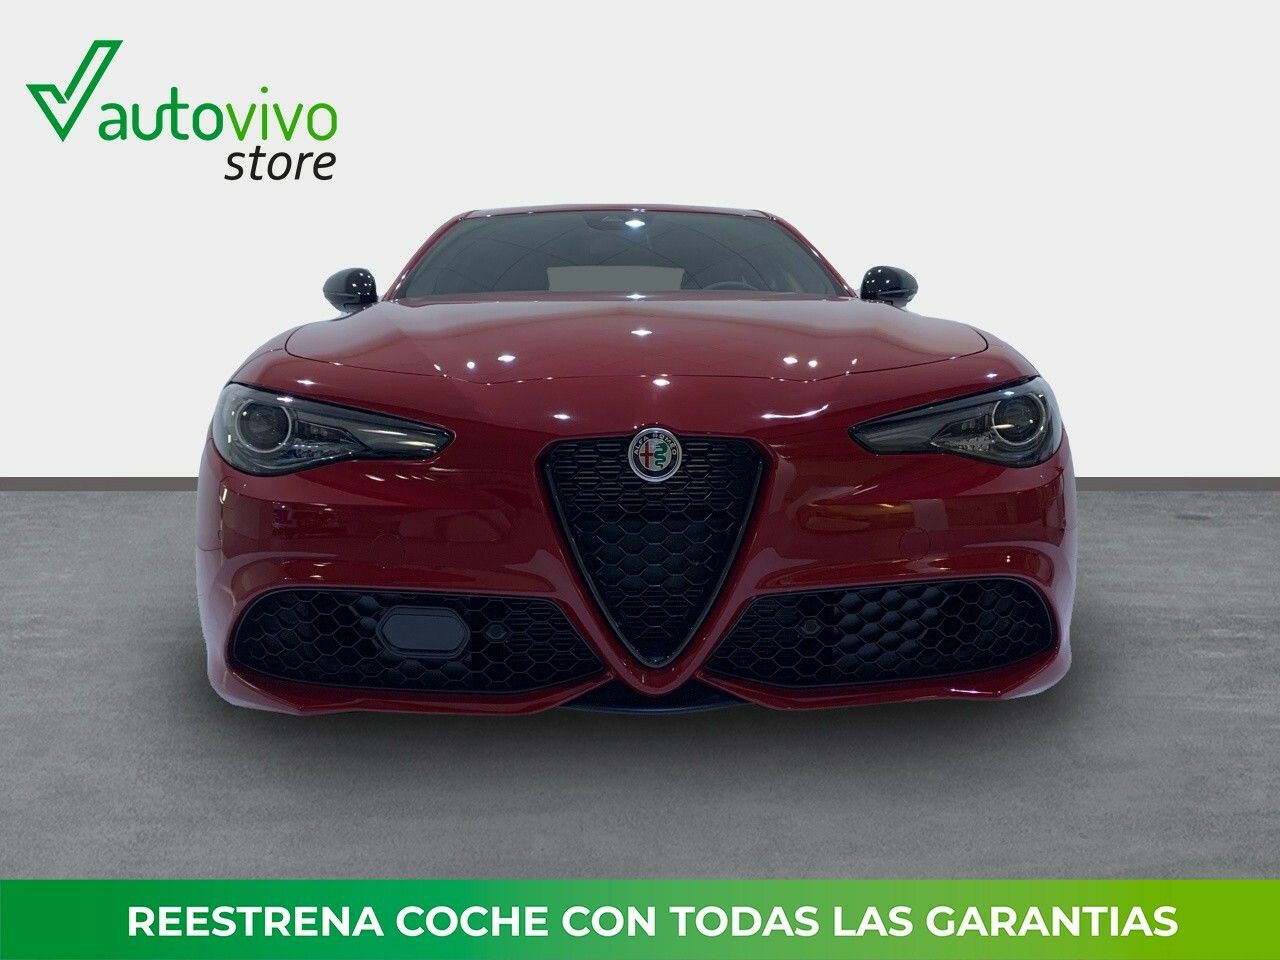 Foto Alfa Romeo Giulia 2